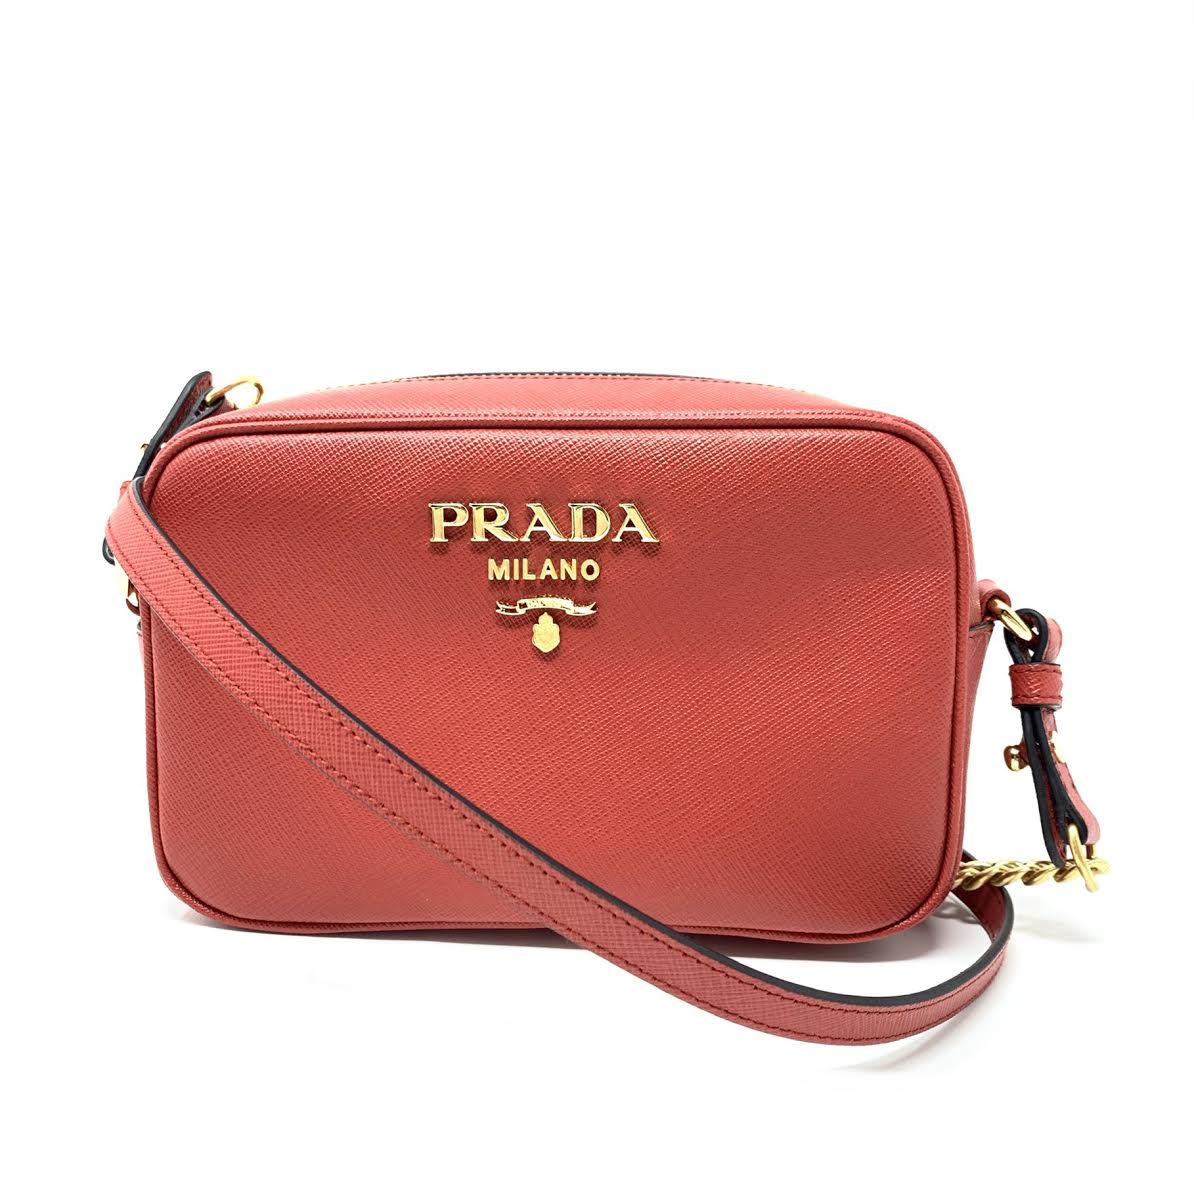 Saffiano-leather crossbody bag, Prada